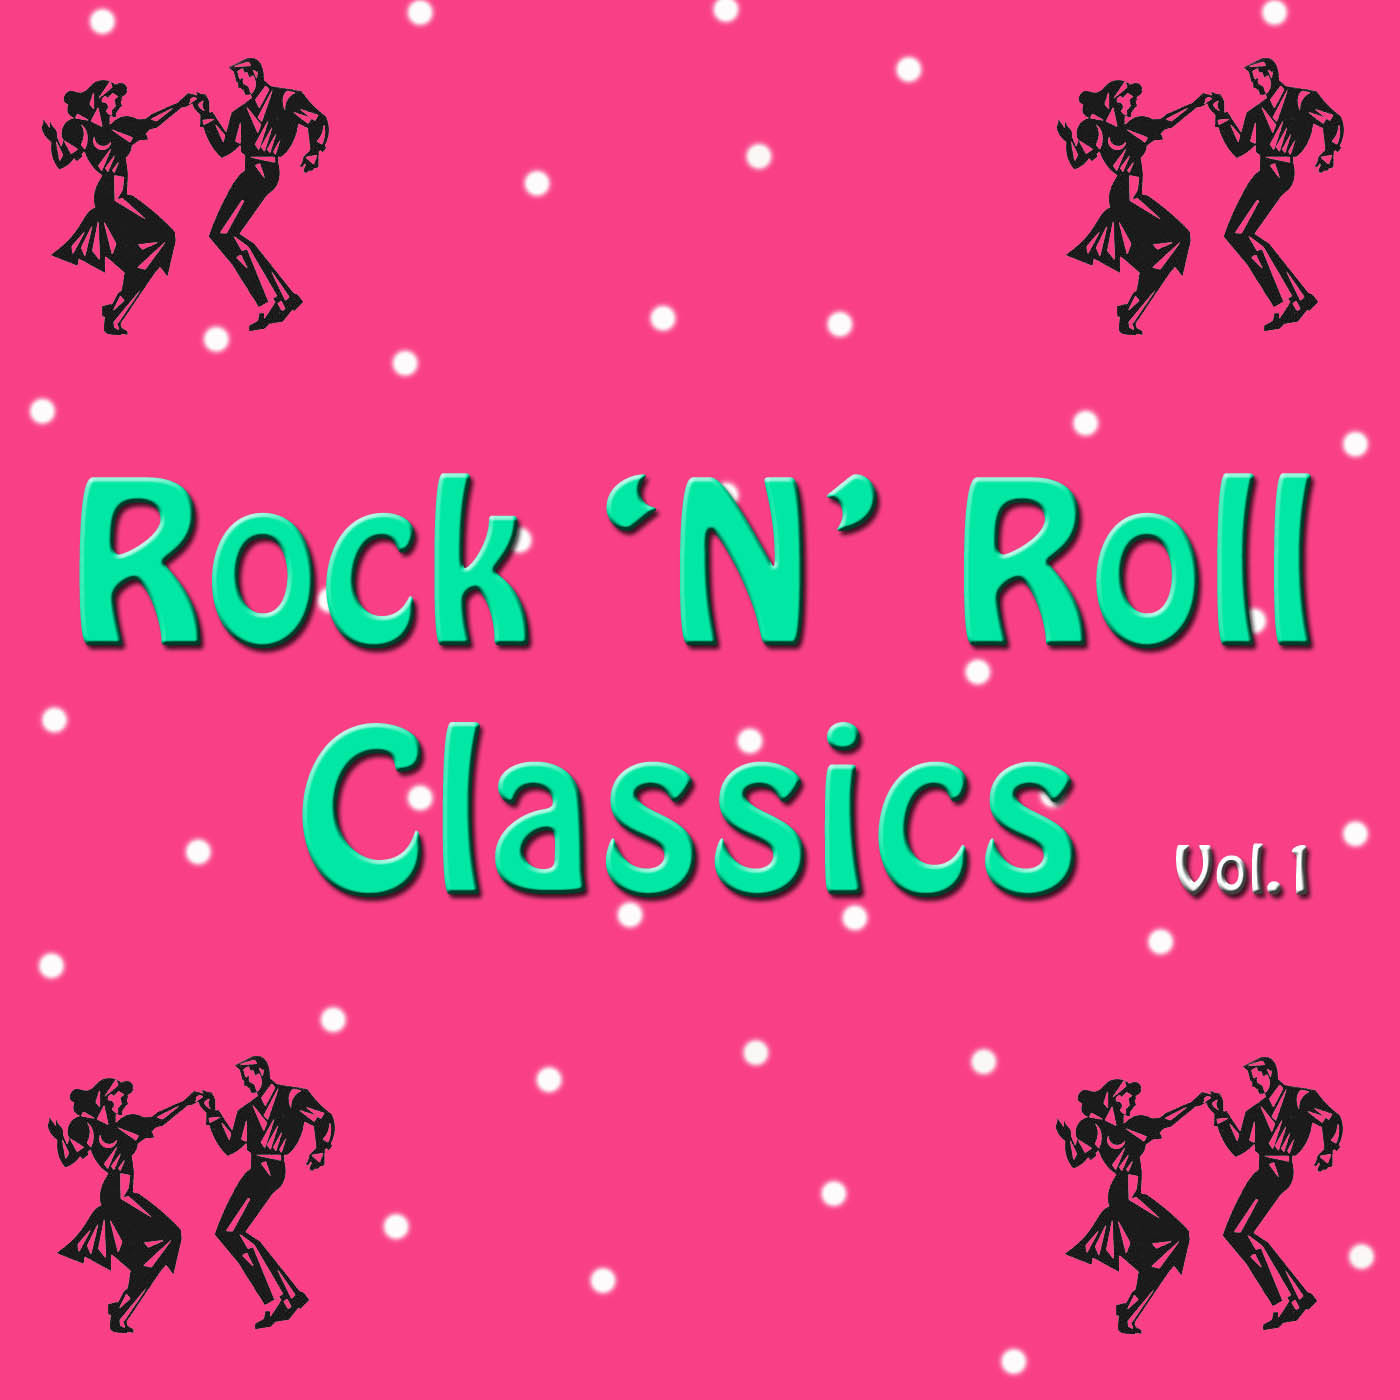 Rock 'n' Roll Classics Vol. 1